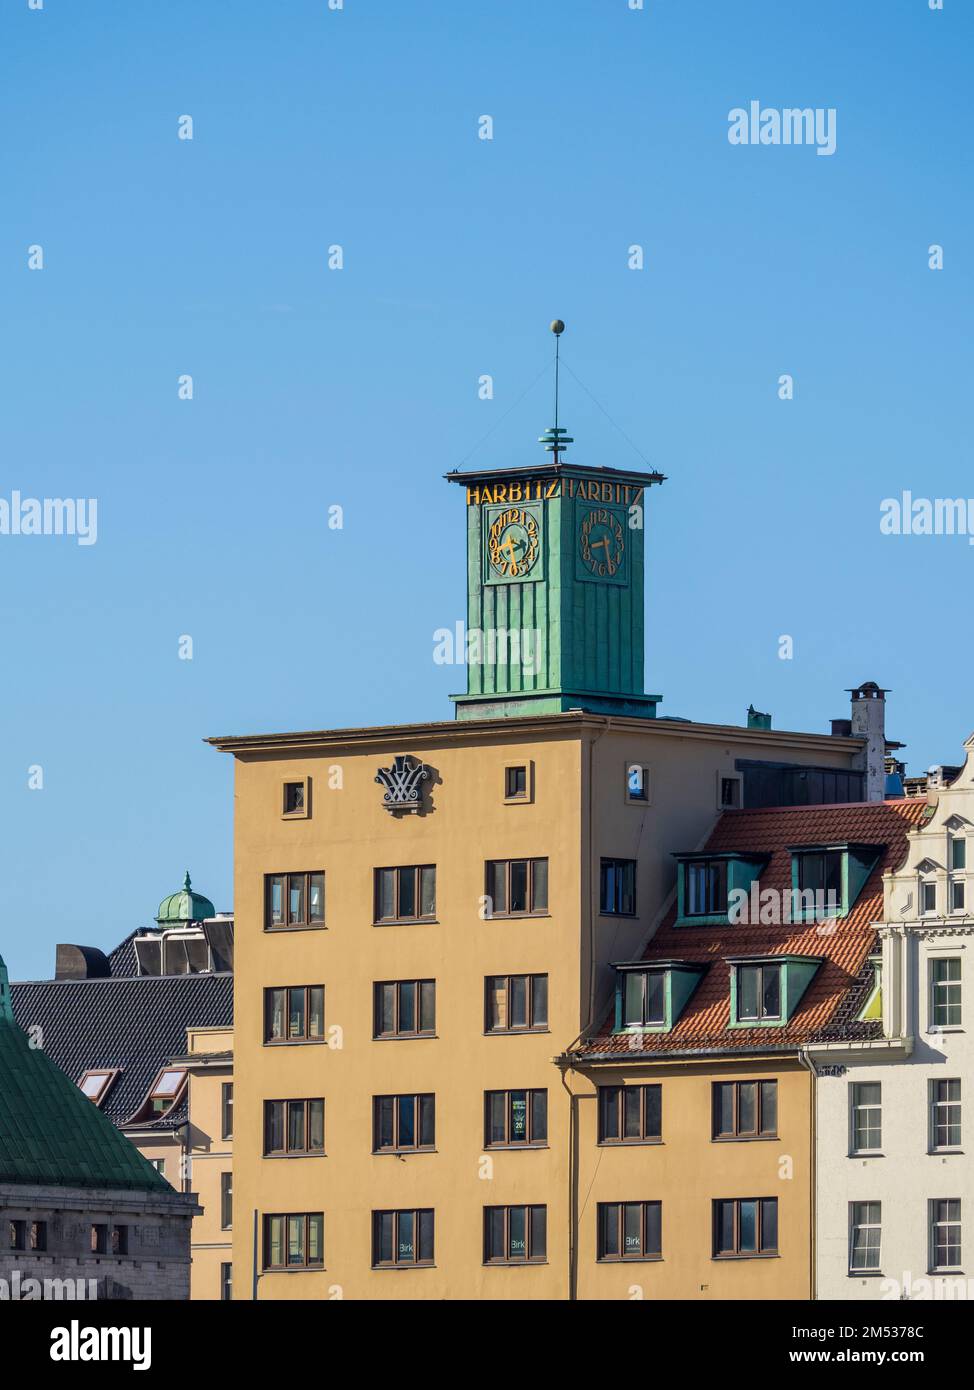 Harbitz Building mit Uhrturm, Bergen Waterfront, Bergen, Norwegen, Europa. Stockfoto